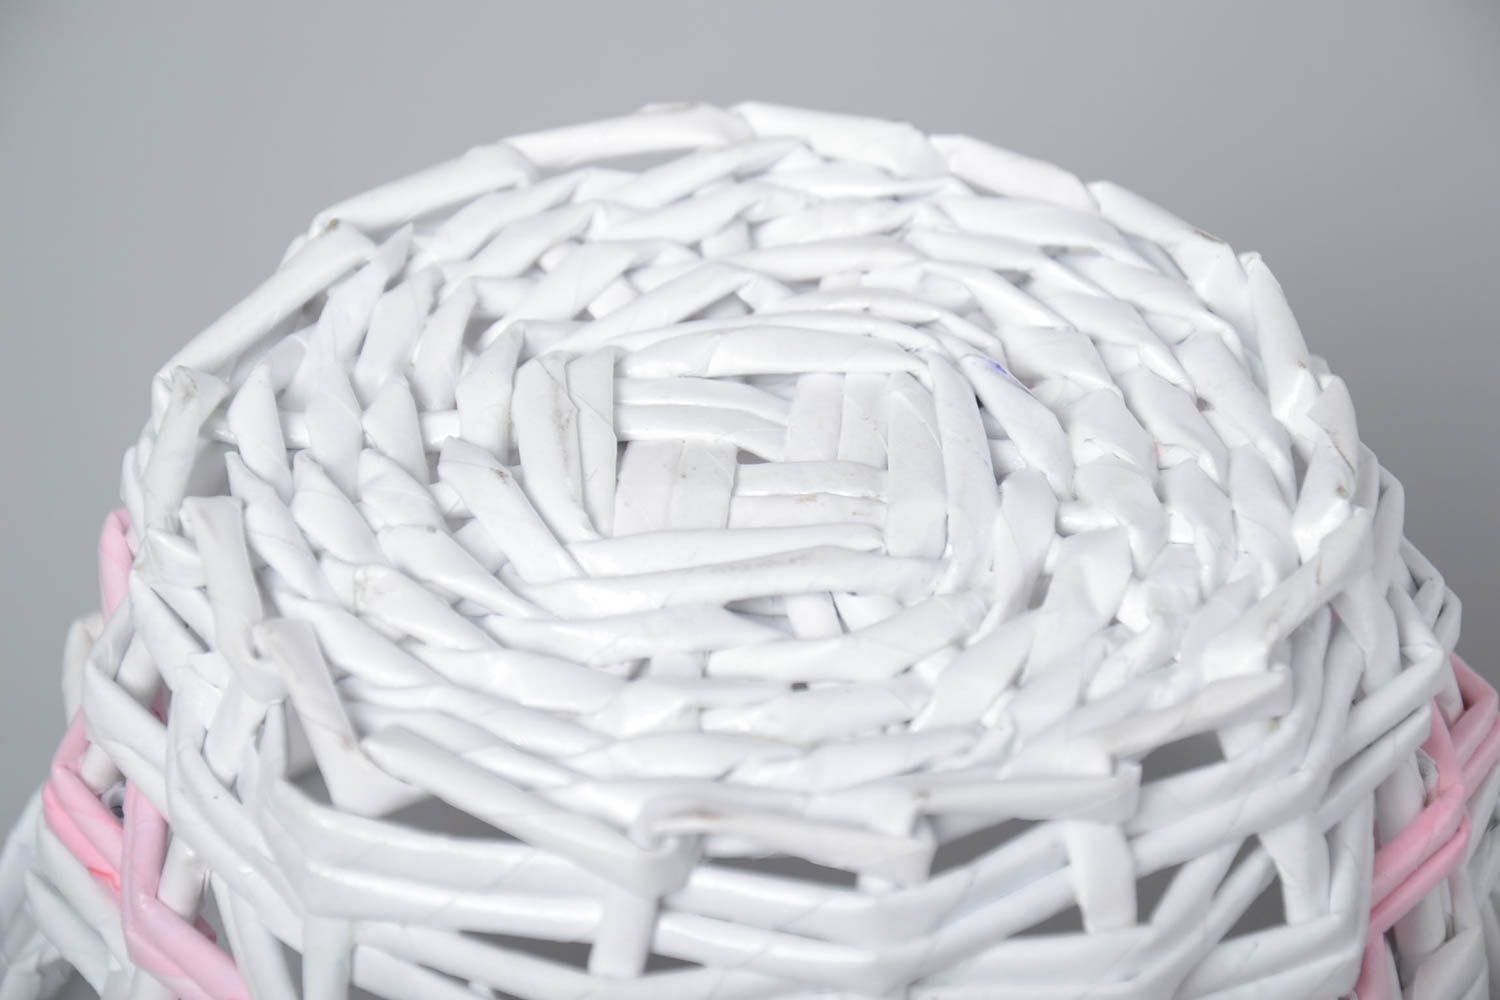 Плетеная вазочка для конфет из бумажной лозы белая ажурная красивая хэнд мейд фото 4